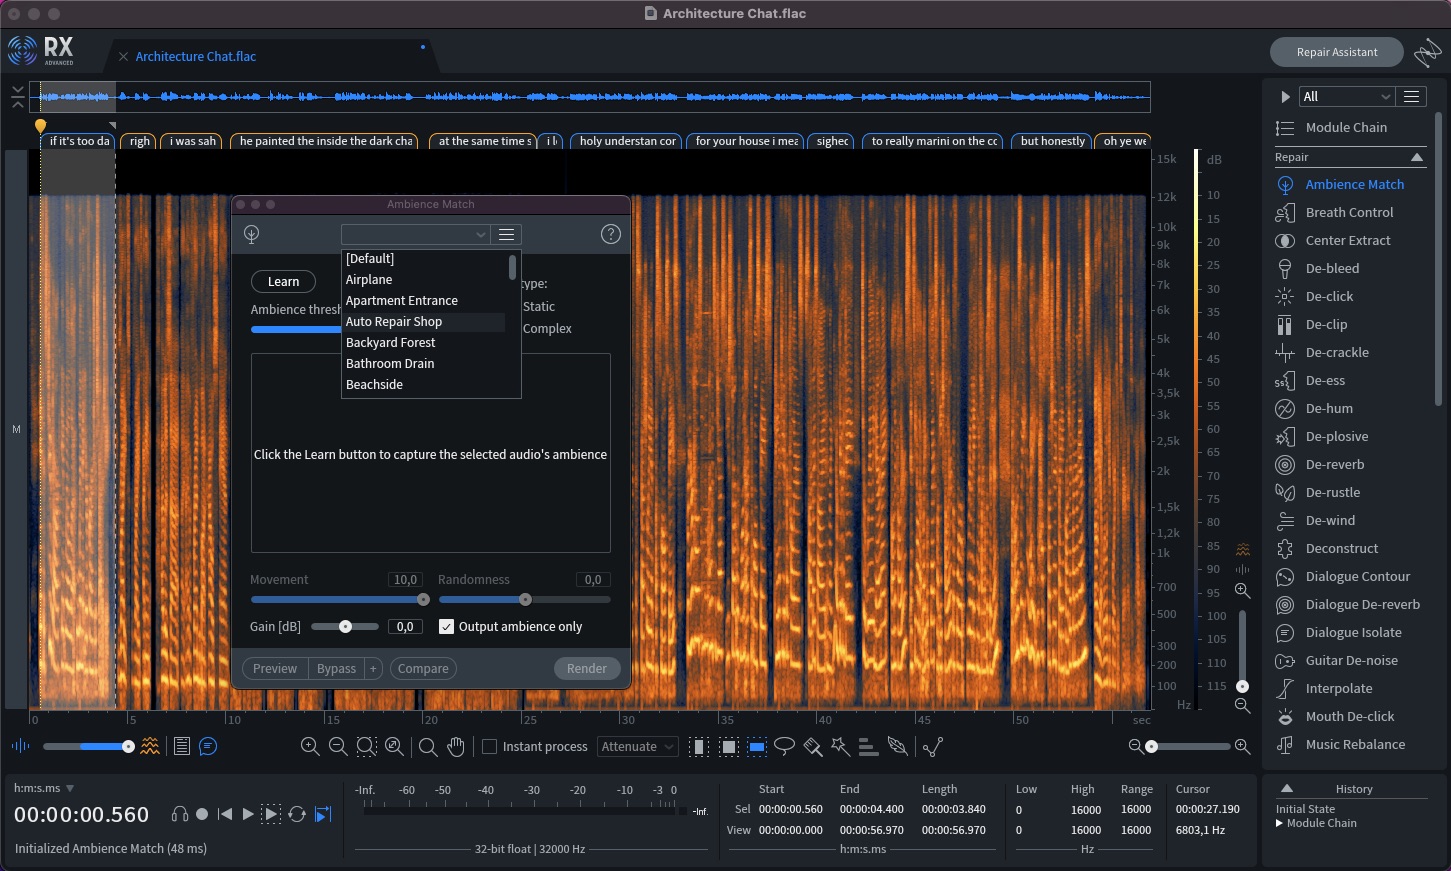 iZotope RX 10 Audio Editor Advanced v10.0.0 Windows